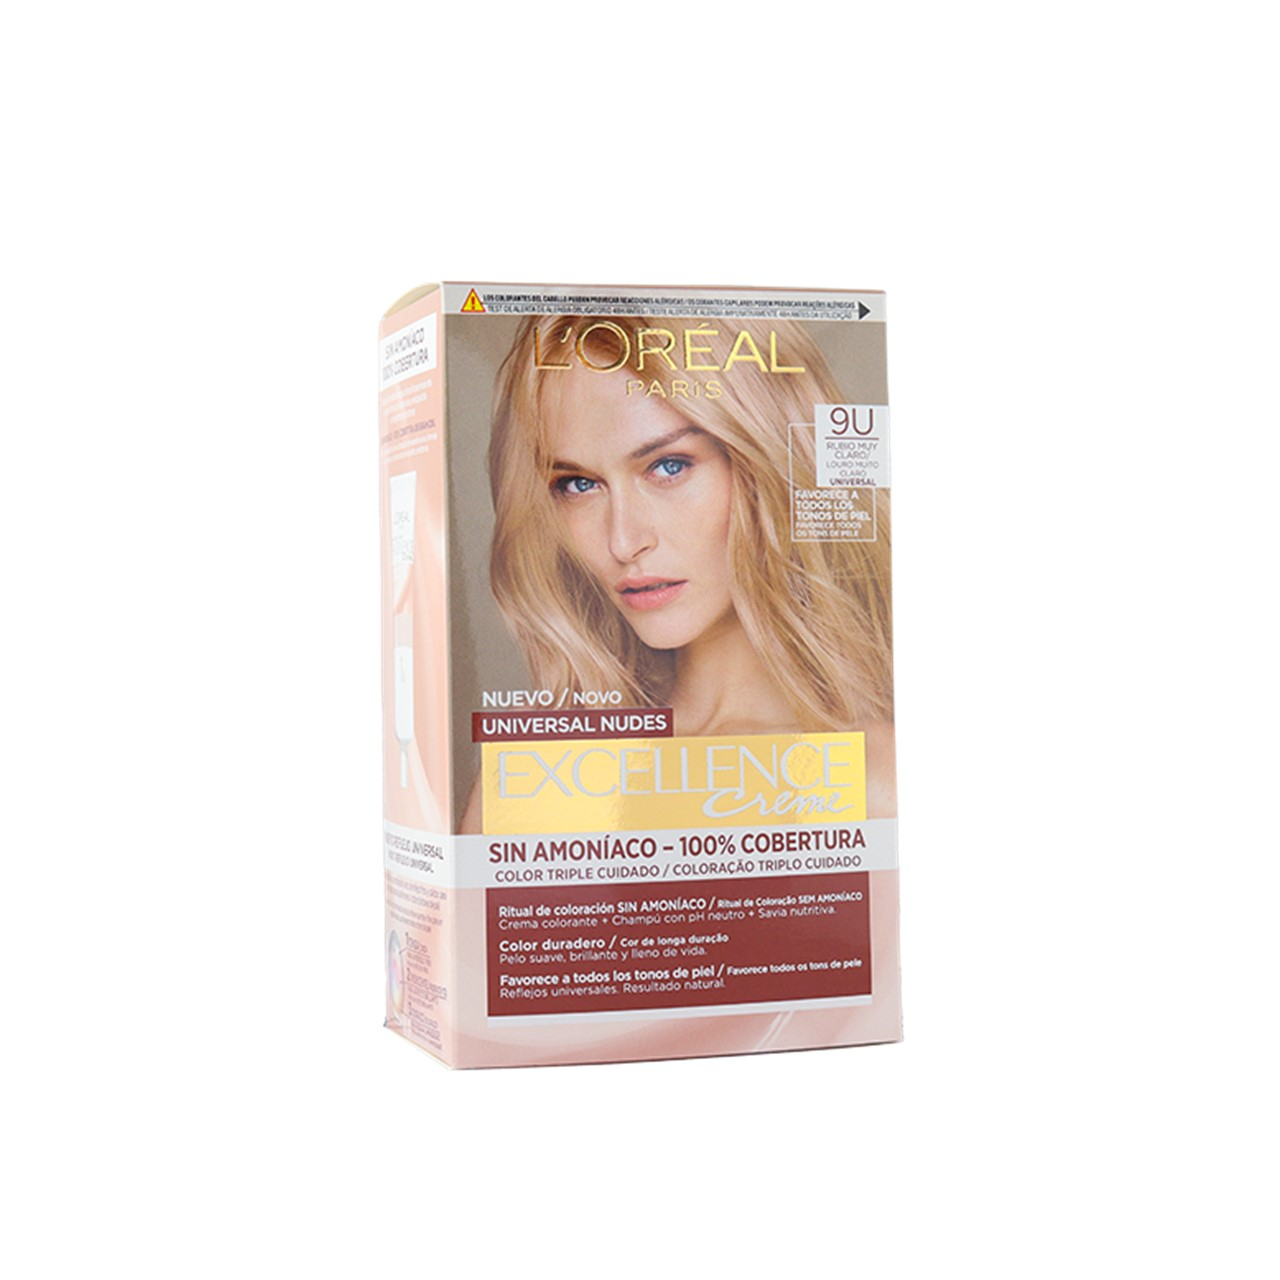 L'Oréal Paris Excellence Creme Universal Nudes 9U Permanent Hair Dye